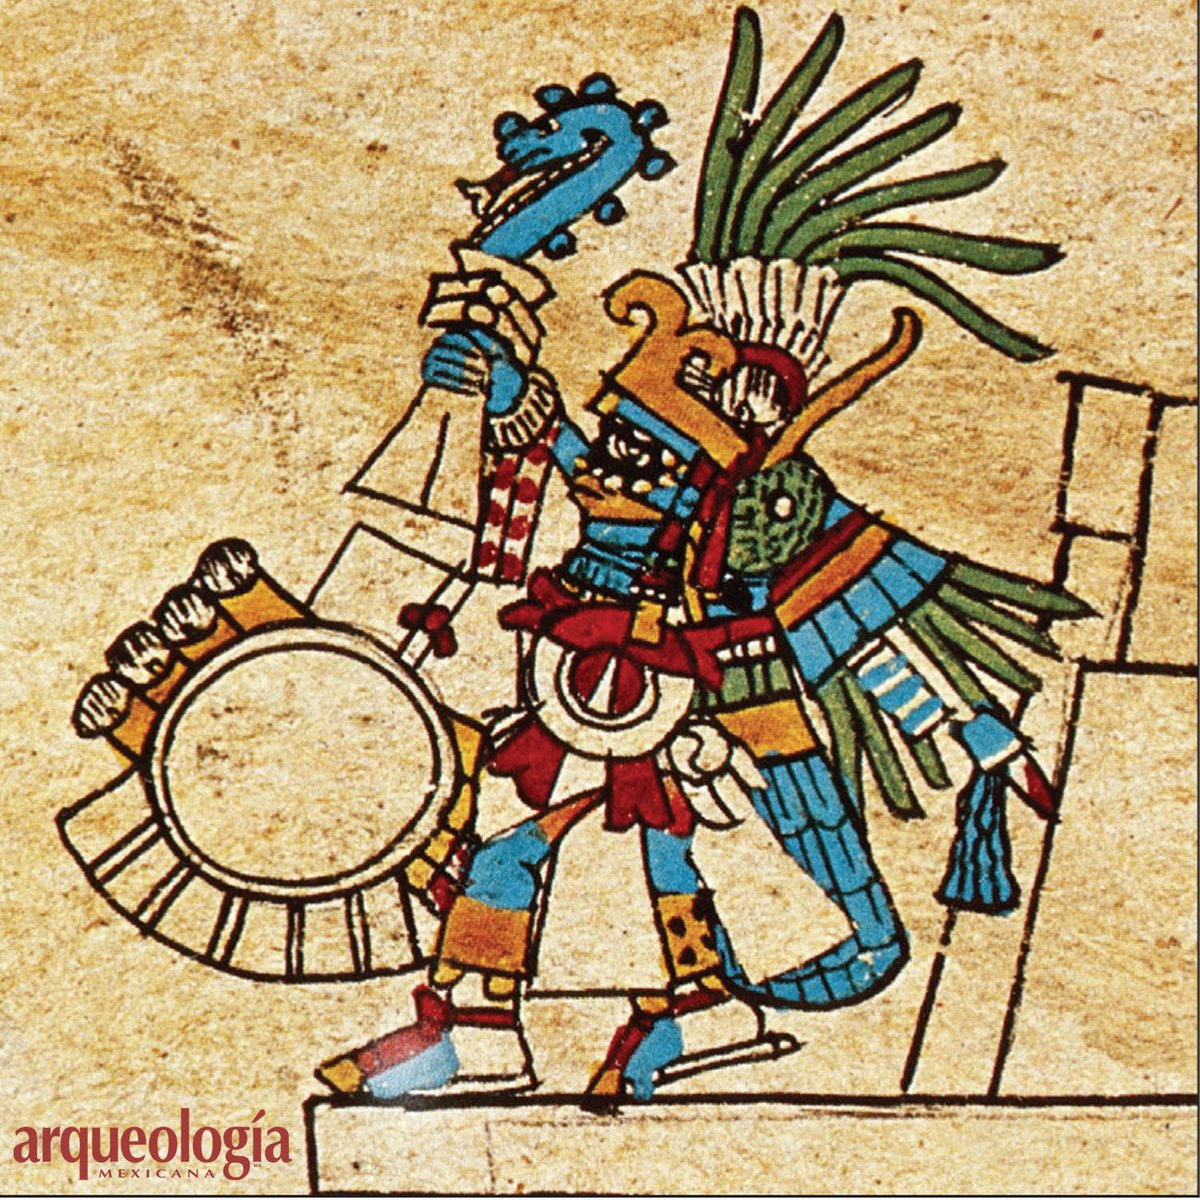 El colibrí es el nahualli por excelencia del dios tutelar de los mexicas. En los códices y la escultura, Huitzilopochtli suele aparecer como un colibrí de cuerpo entero, en ocasiones con un rostro humano que emerge de su pico abierto.